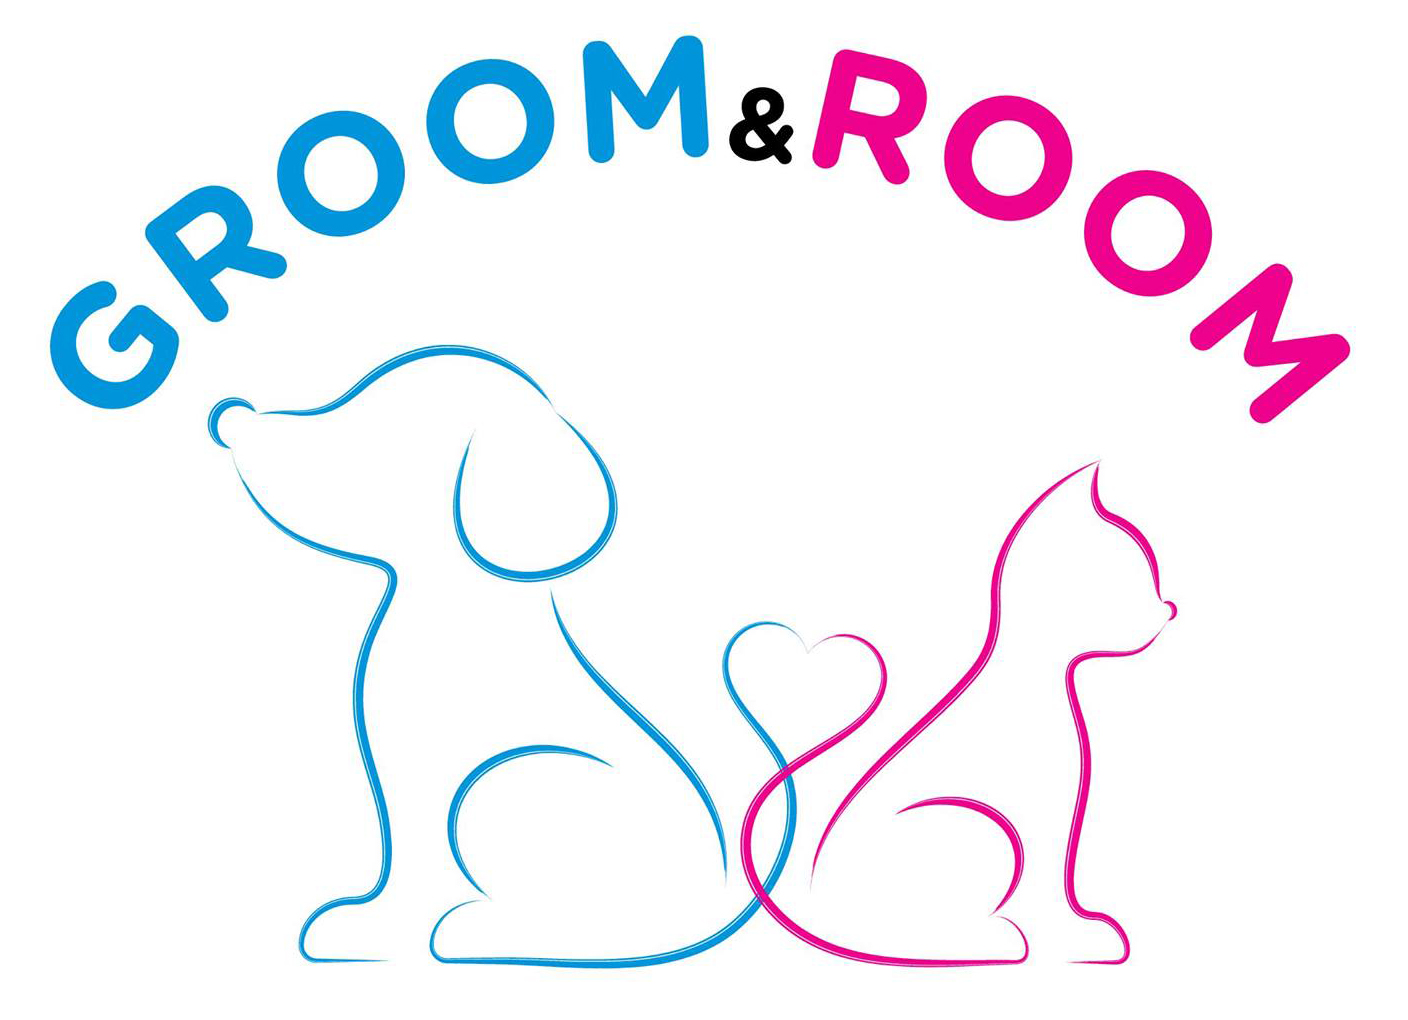 Groom & Room